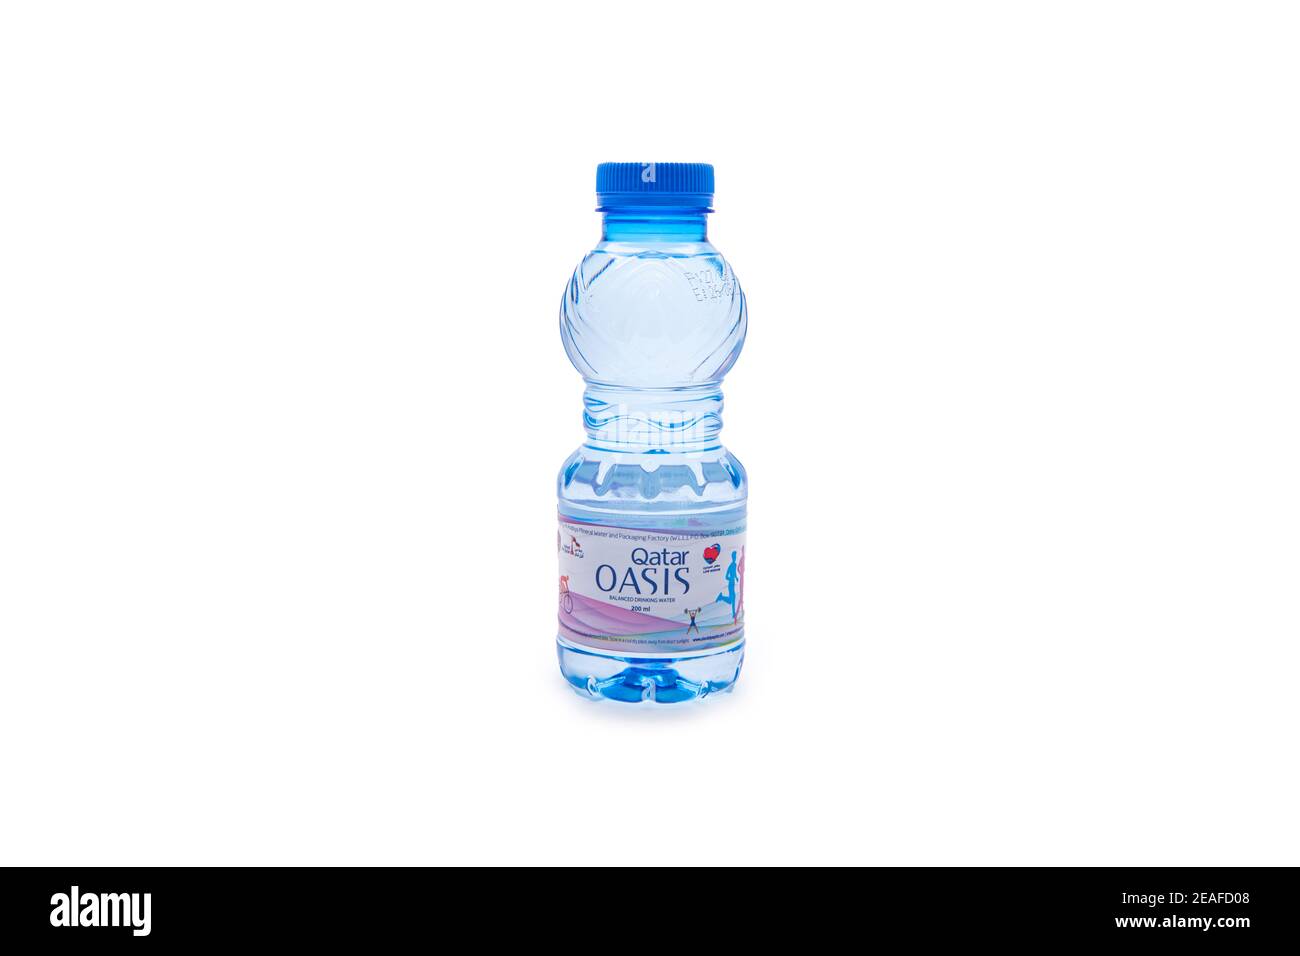 Qatar Oasis bottiglia di acqua potabile su sfondo isolato Foto Stock